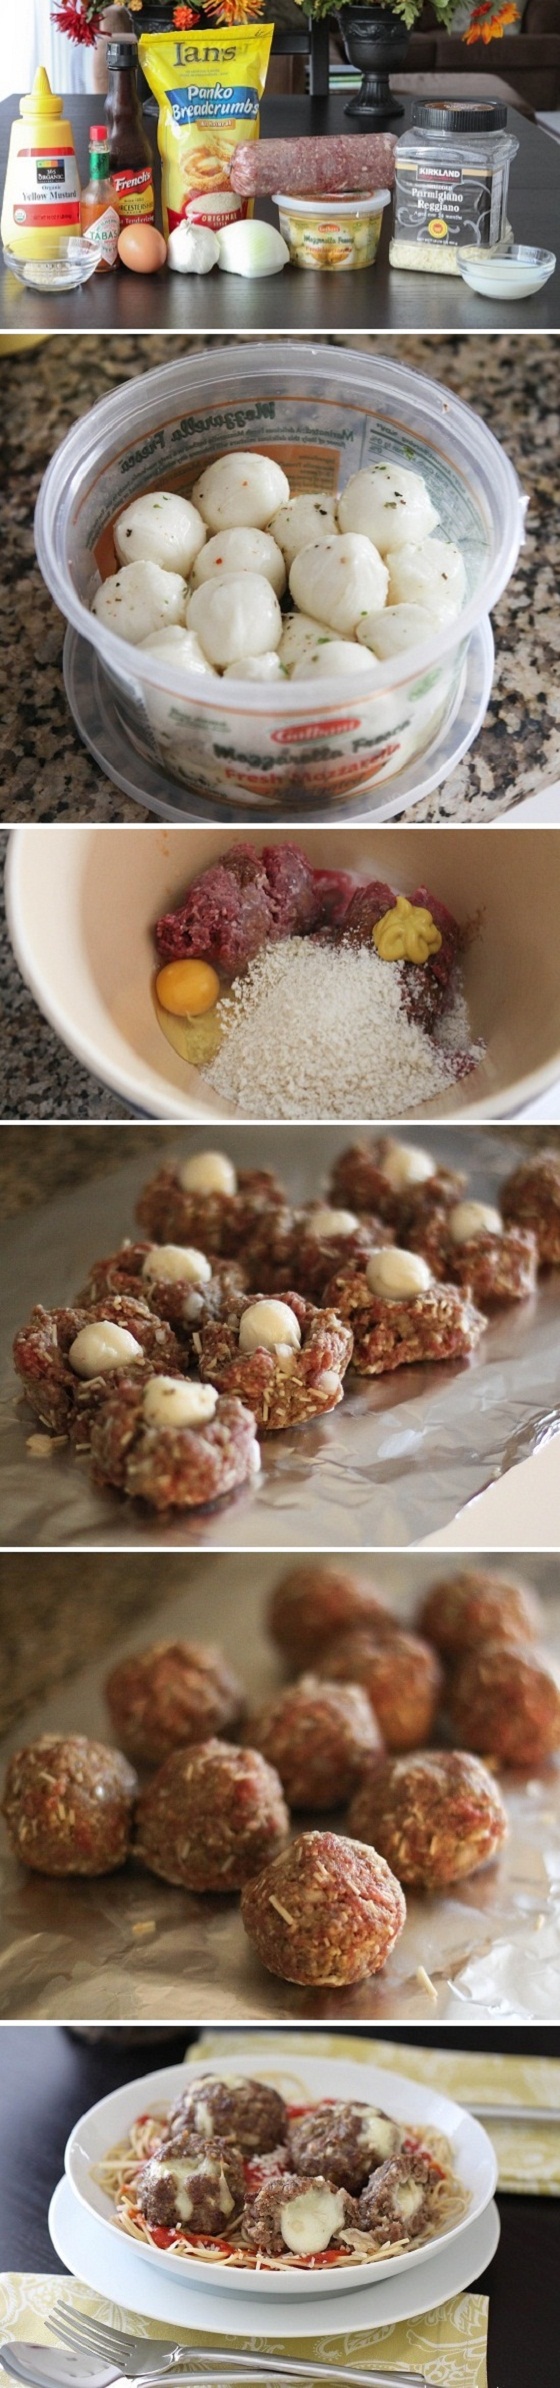 Mozzarella-Stuffed-Meatballs-Recipe